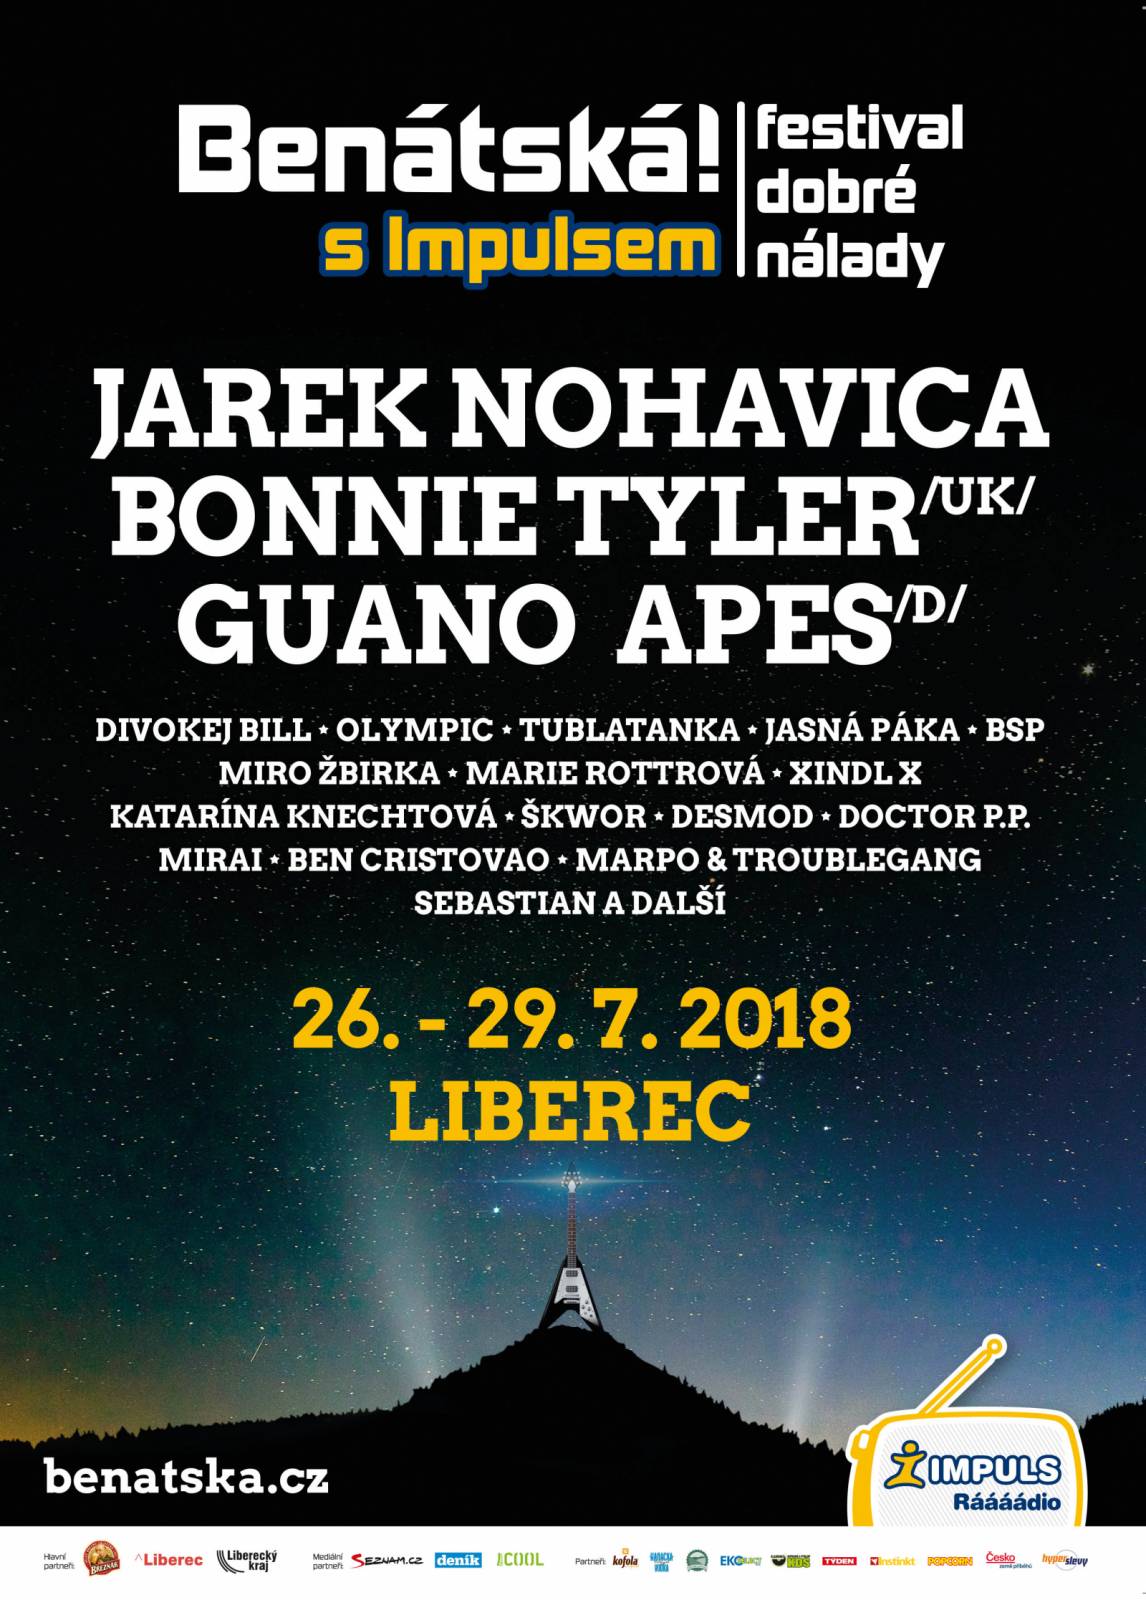 Benátská! s Impulsem odpočítává poslední dny do startu, vystoupí Guano Apes, Bonnie Tyler i Jaromír Nohavica